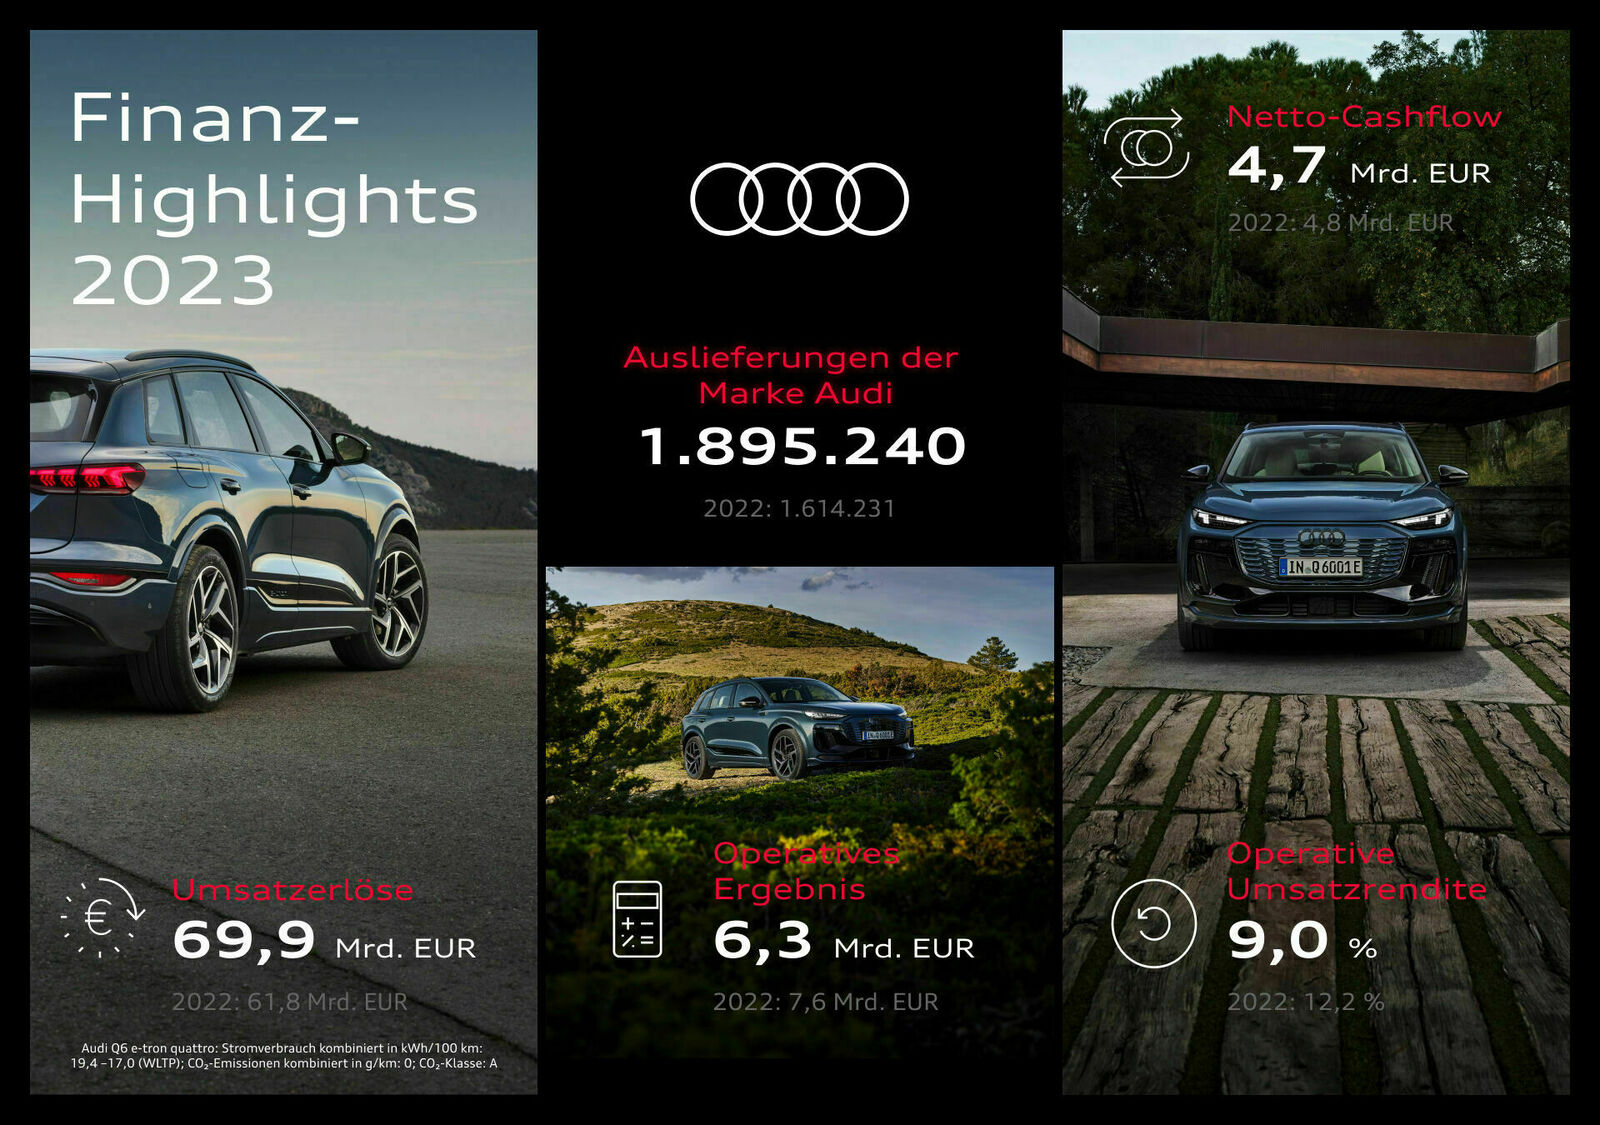 Infografik der Finanz-Highlights 2023 von Audi mit Bildern von Autos und Kennzahlen wie Auslieferungen, Umsatzerlöse, operatives Ergebnis und operative Umsatzrendite.